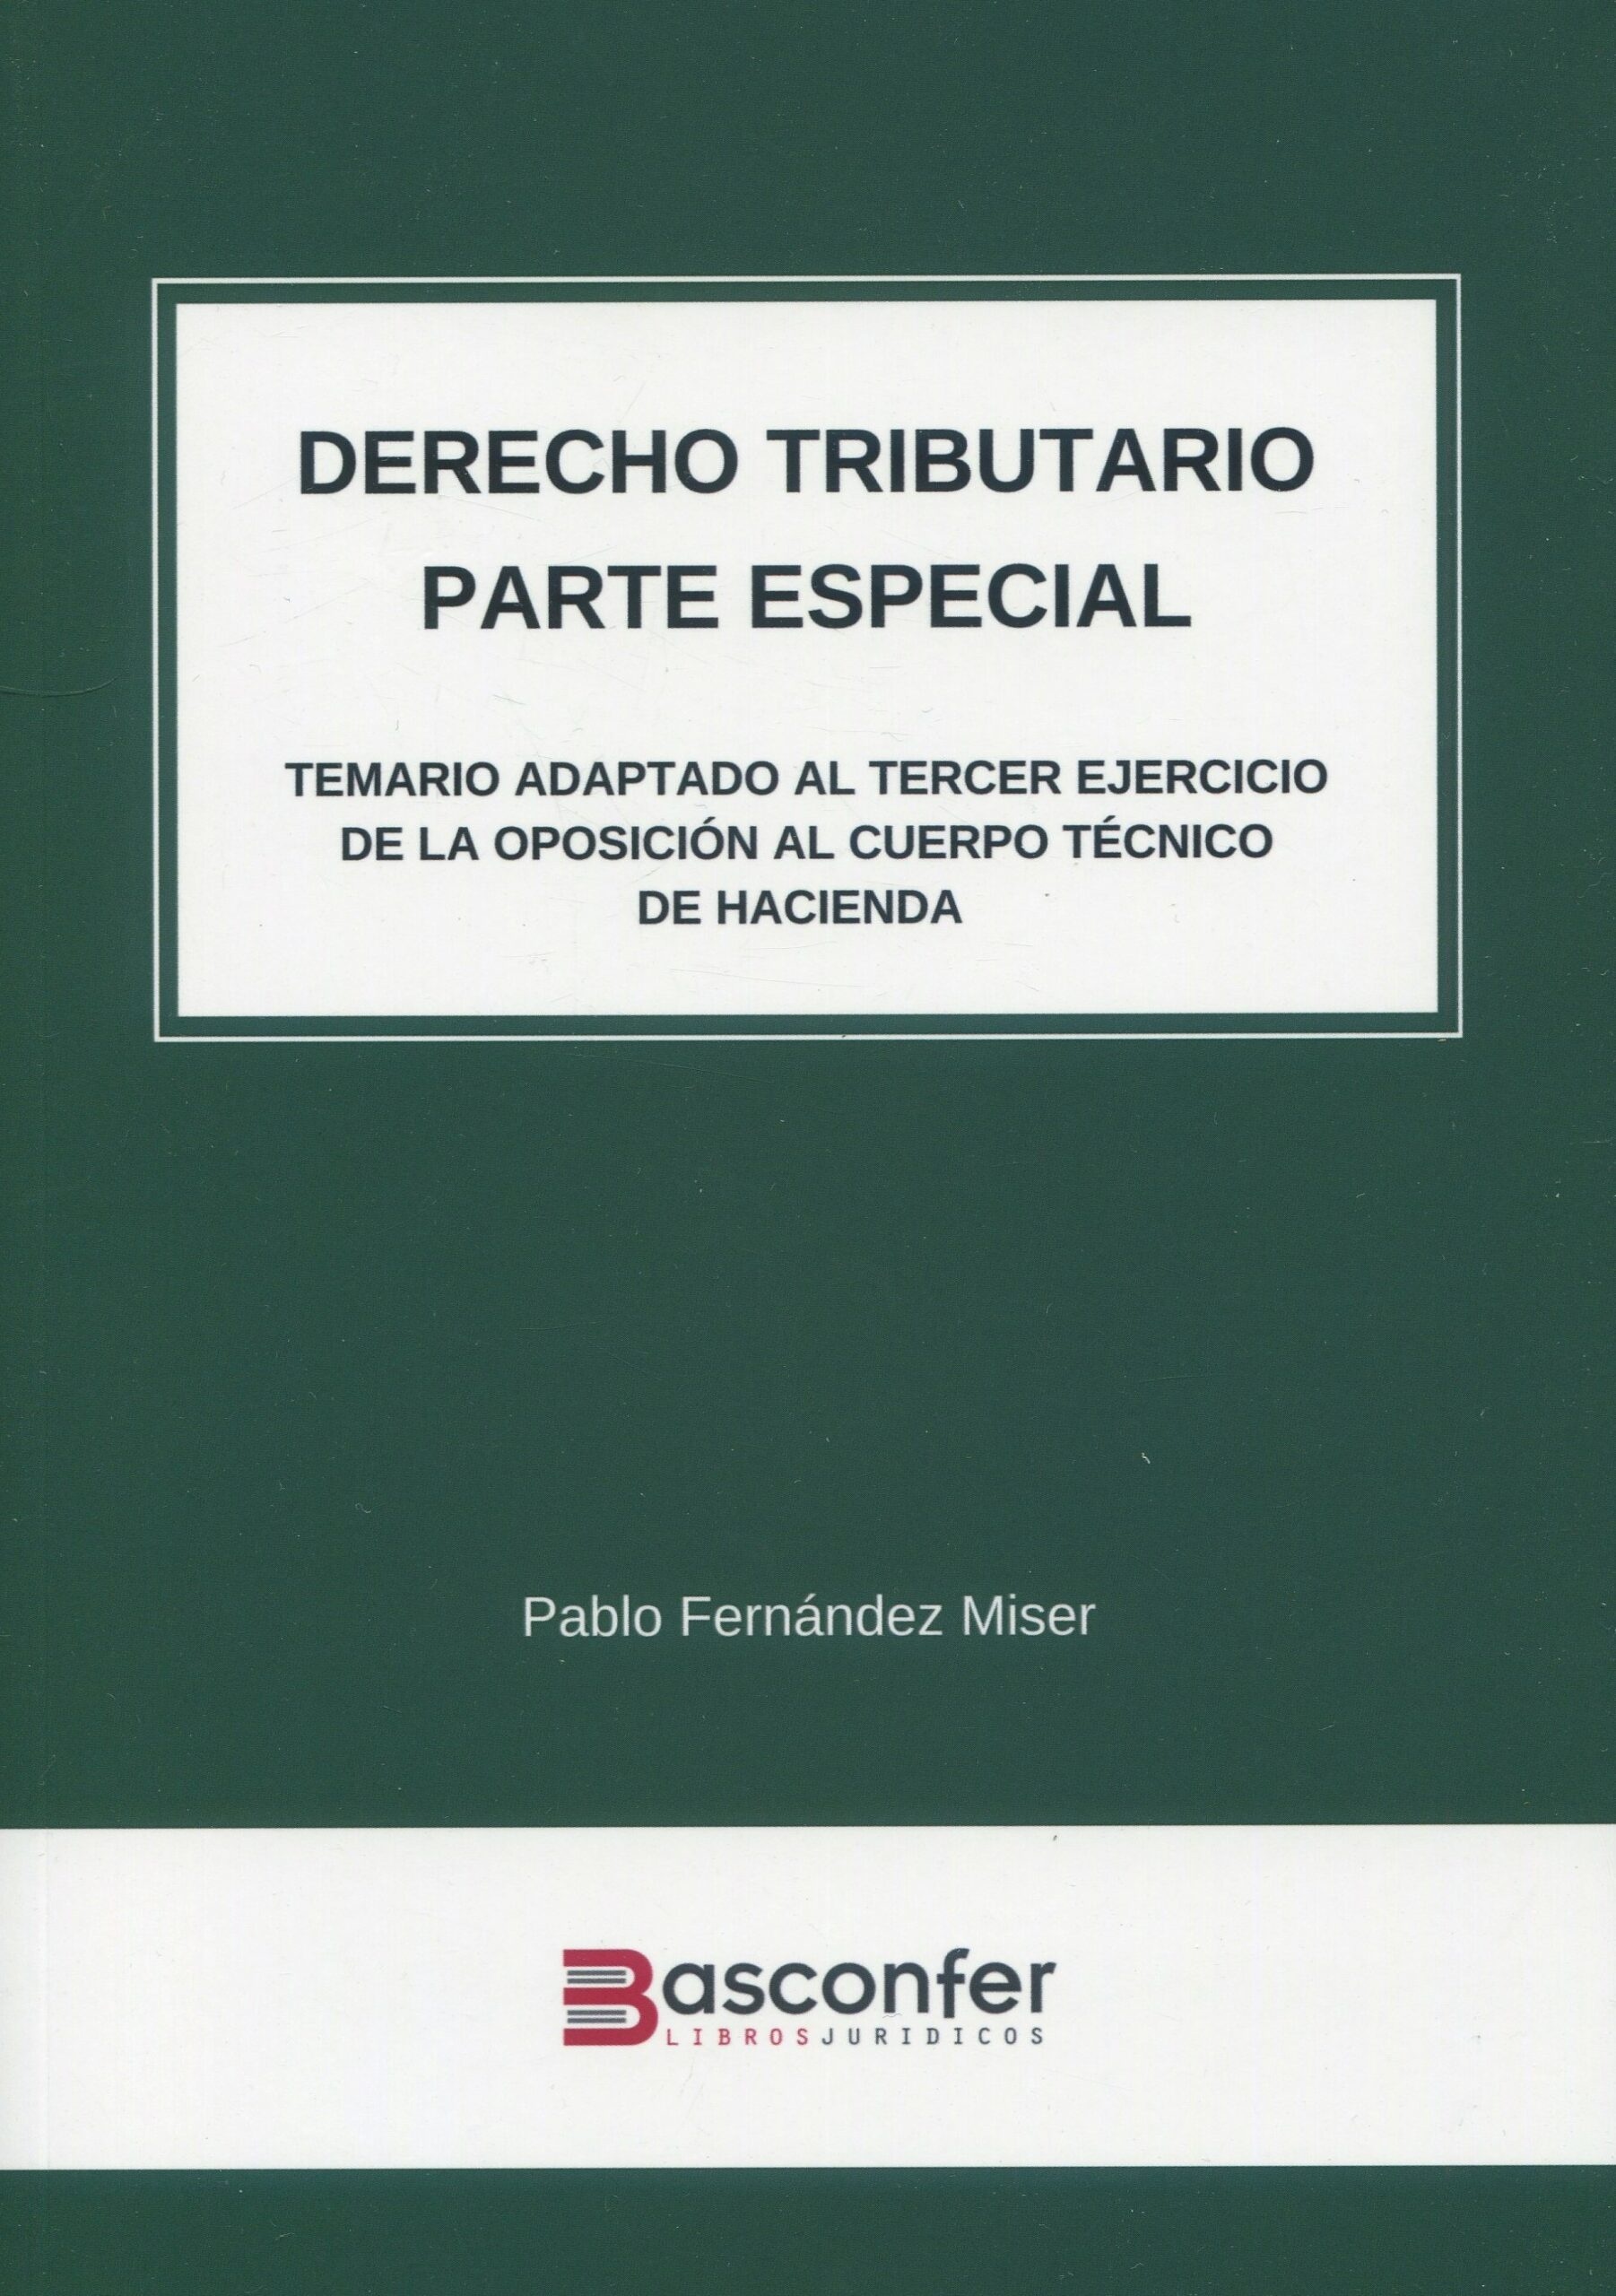 Derecho Tributario. Parte Especial "Temario adaptado al tercer ejercicio de la oposición al Cuerpo Técnico de Hacienda"